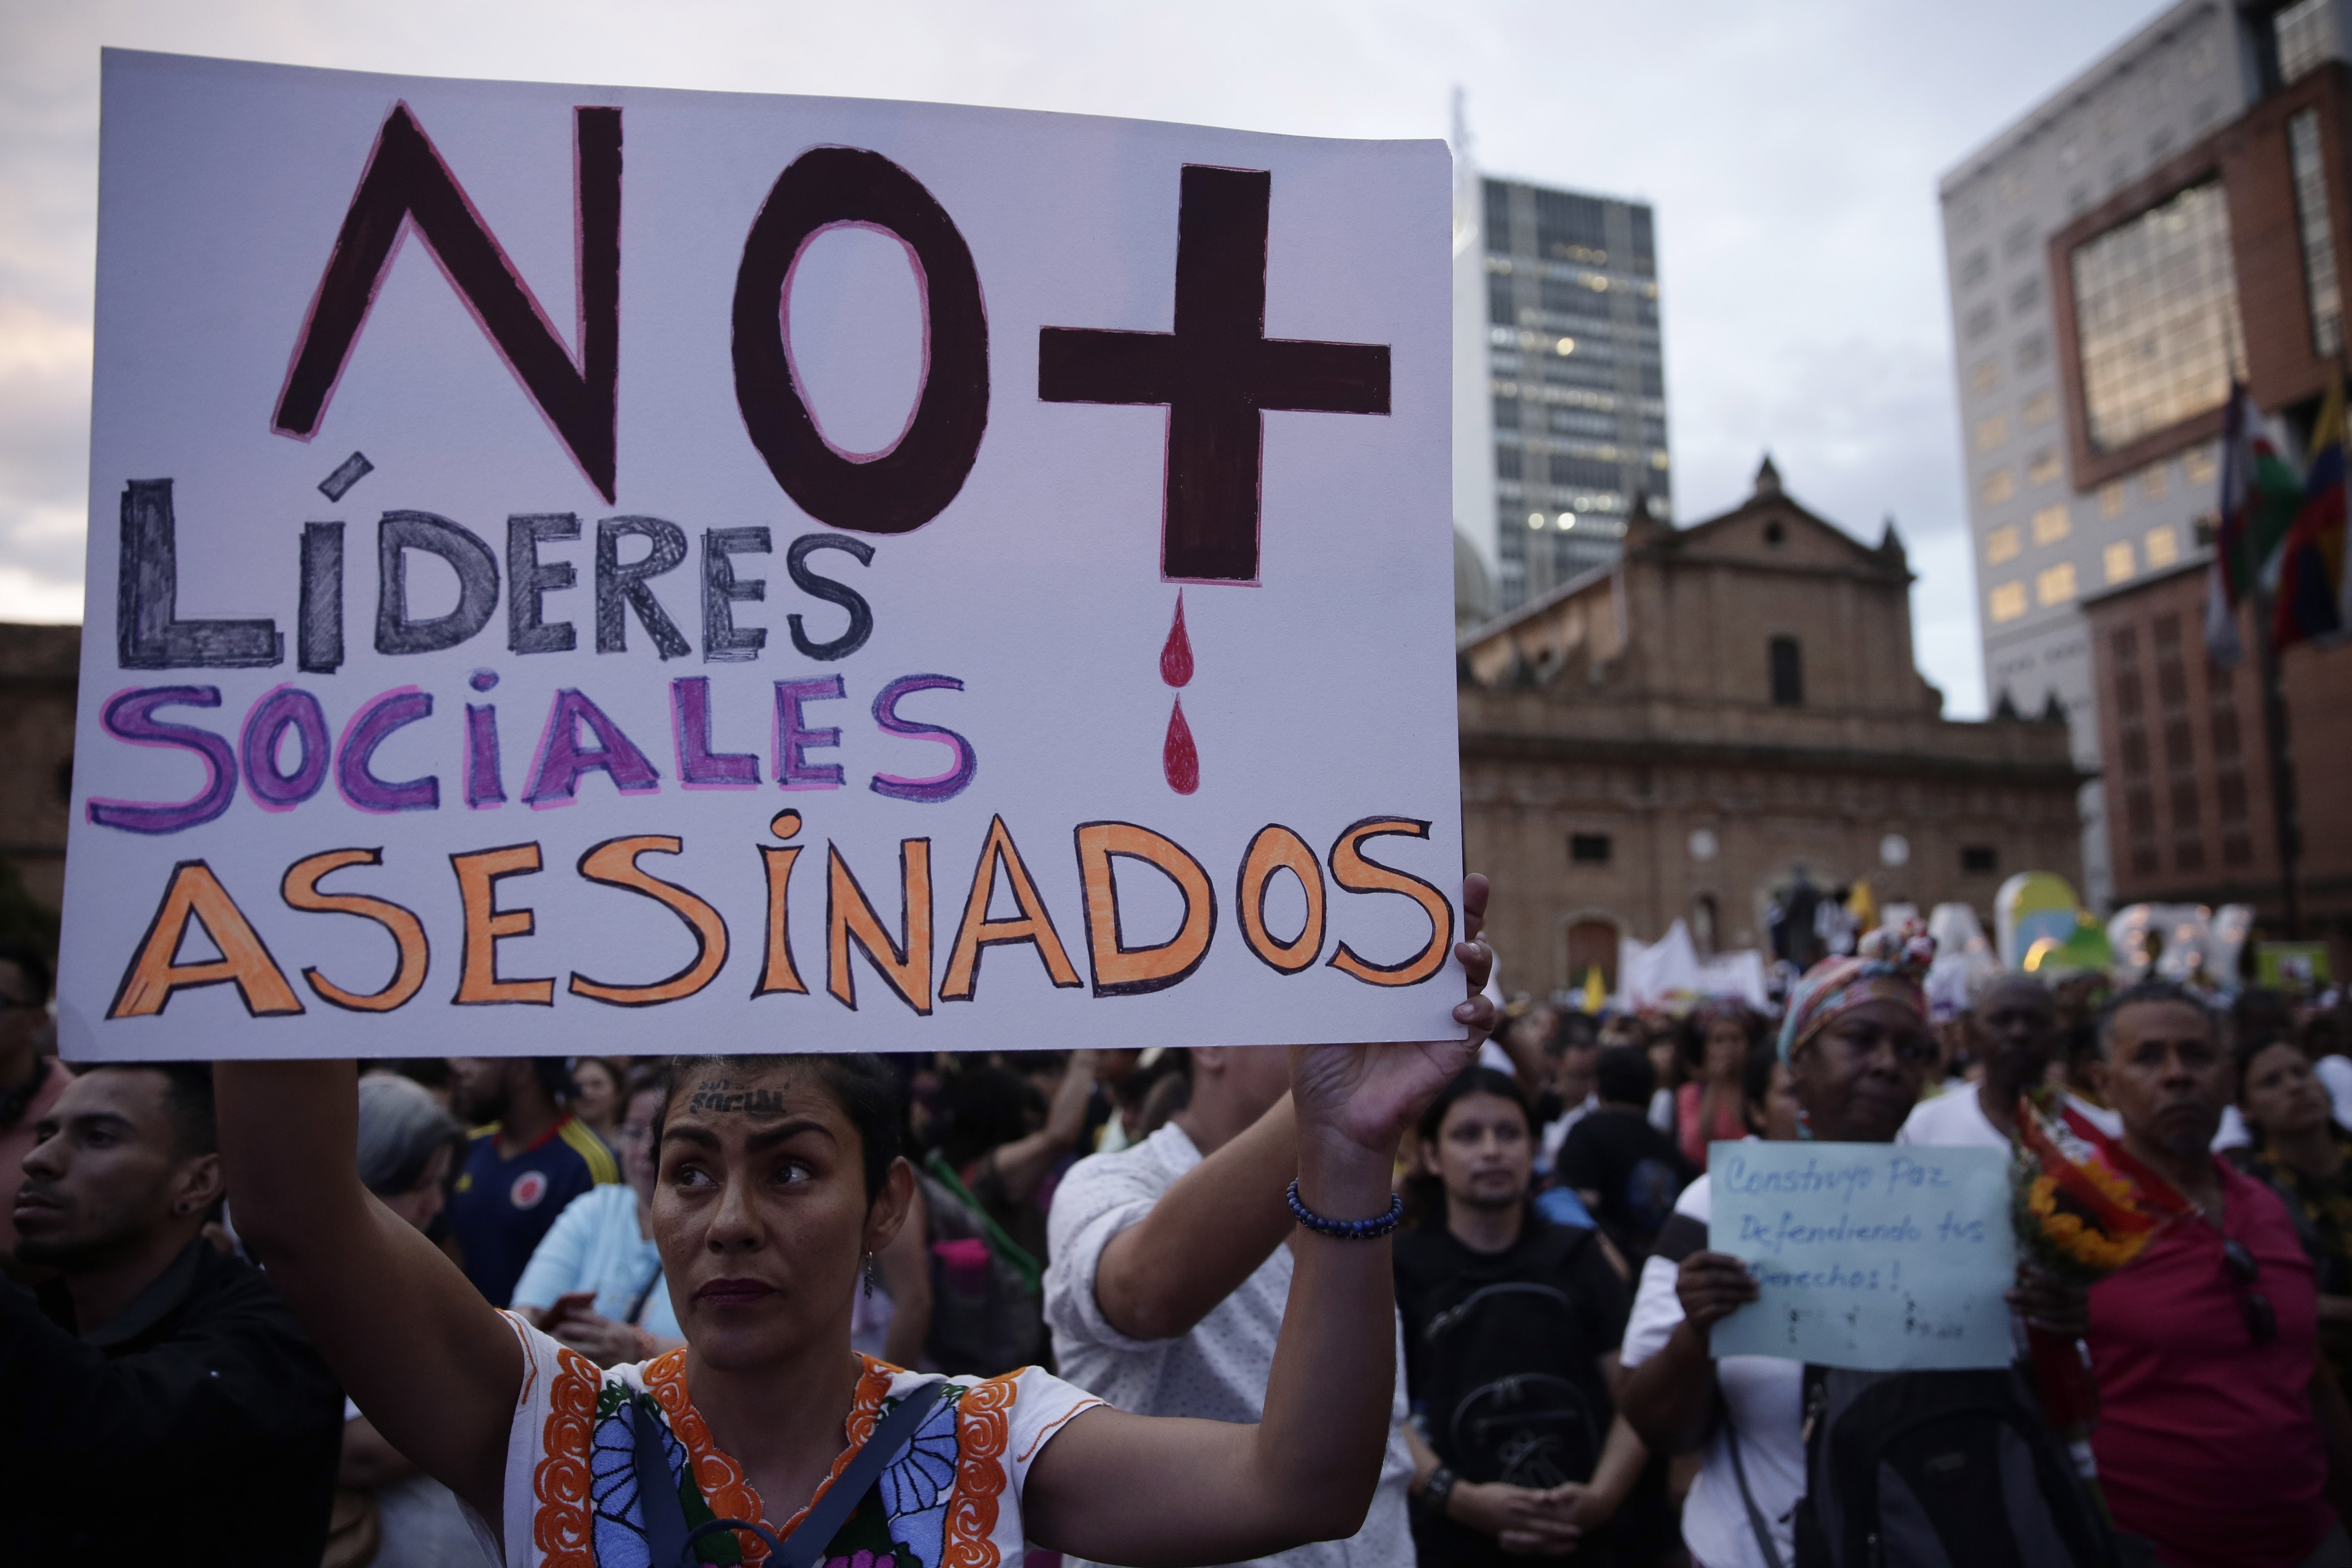 Una de las principales razones de las protestas sociales en Colombia ha sido el asesinato de líderes sociales en el país. Foto: EFE/Ernesto Guzmán/Archivo
